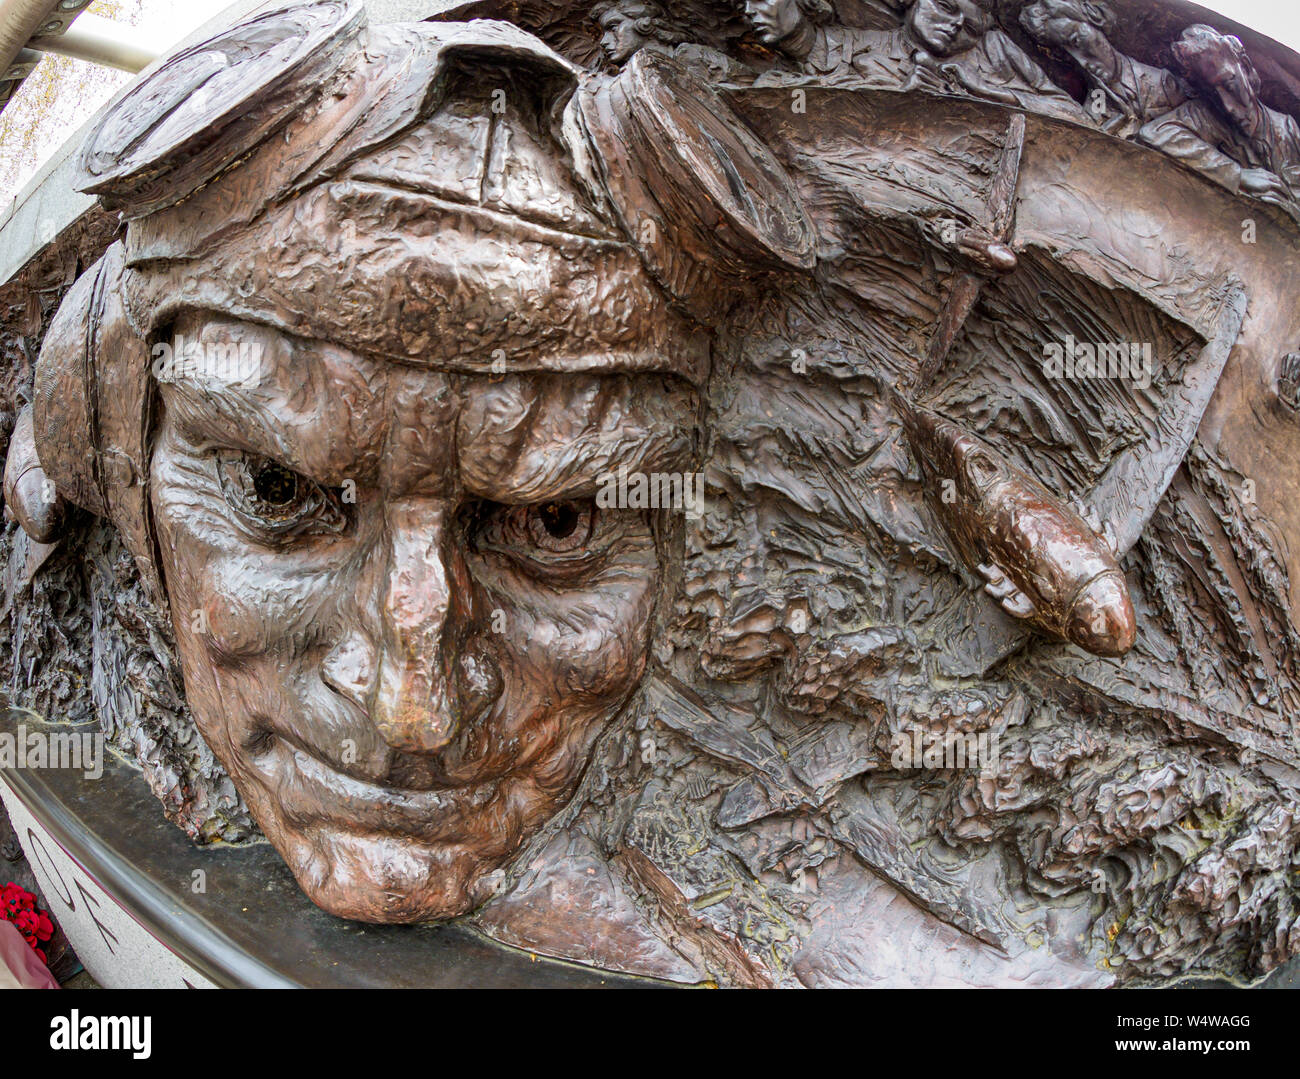 Die Schlacht um England Denkmal, Victoria Embankment, London. Erinnert an deren, die an der Schlacht im Zweiten Weltkrieg nahm. Mit Fish Eye Objektiv aufgenommen Stockfoto